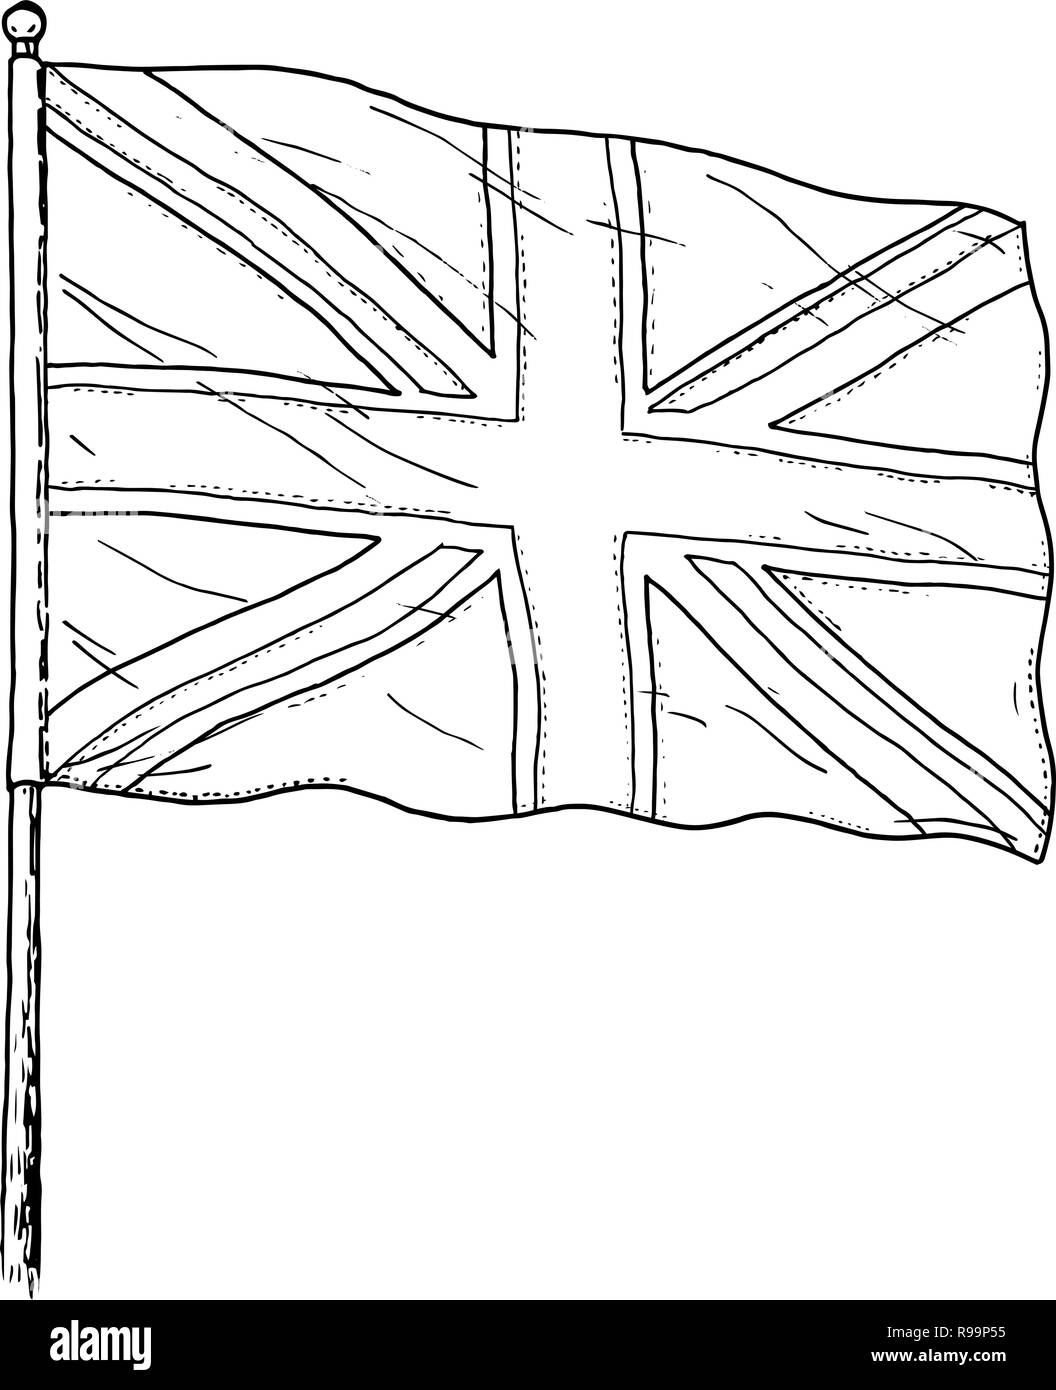 Pavillon du Royaume-Uni - dessin noir et blanc vintage comme illustration du drapeau britannique - Union Jack. Isolé sur fond blanc. Illustration de Vecteur